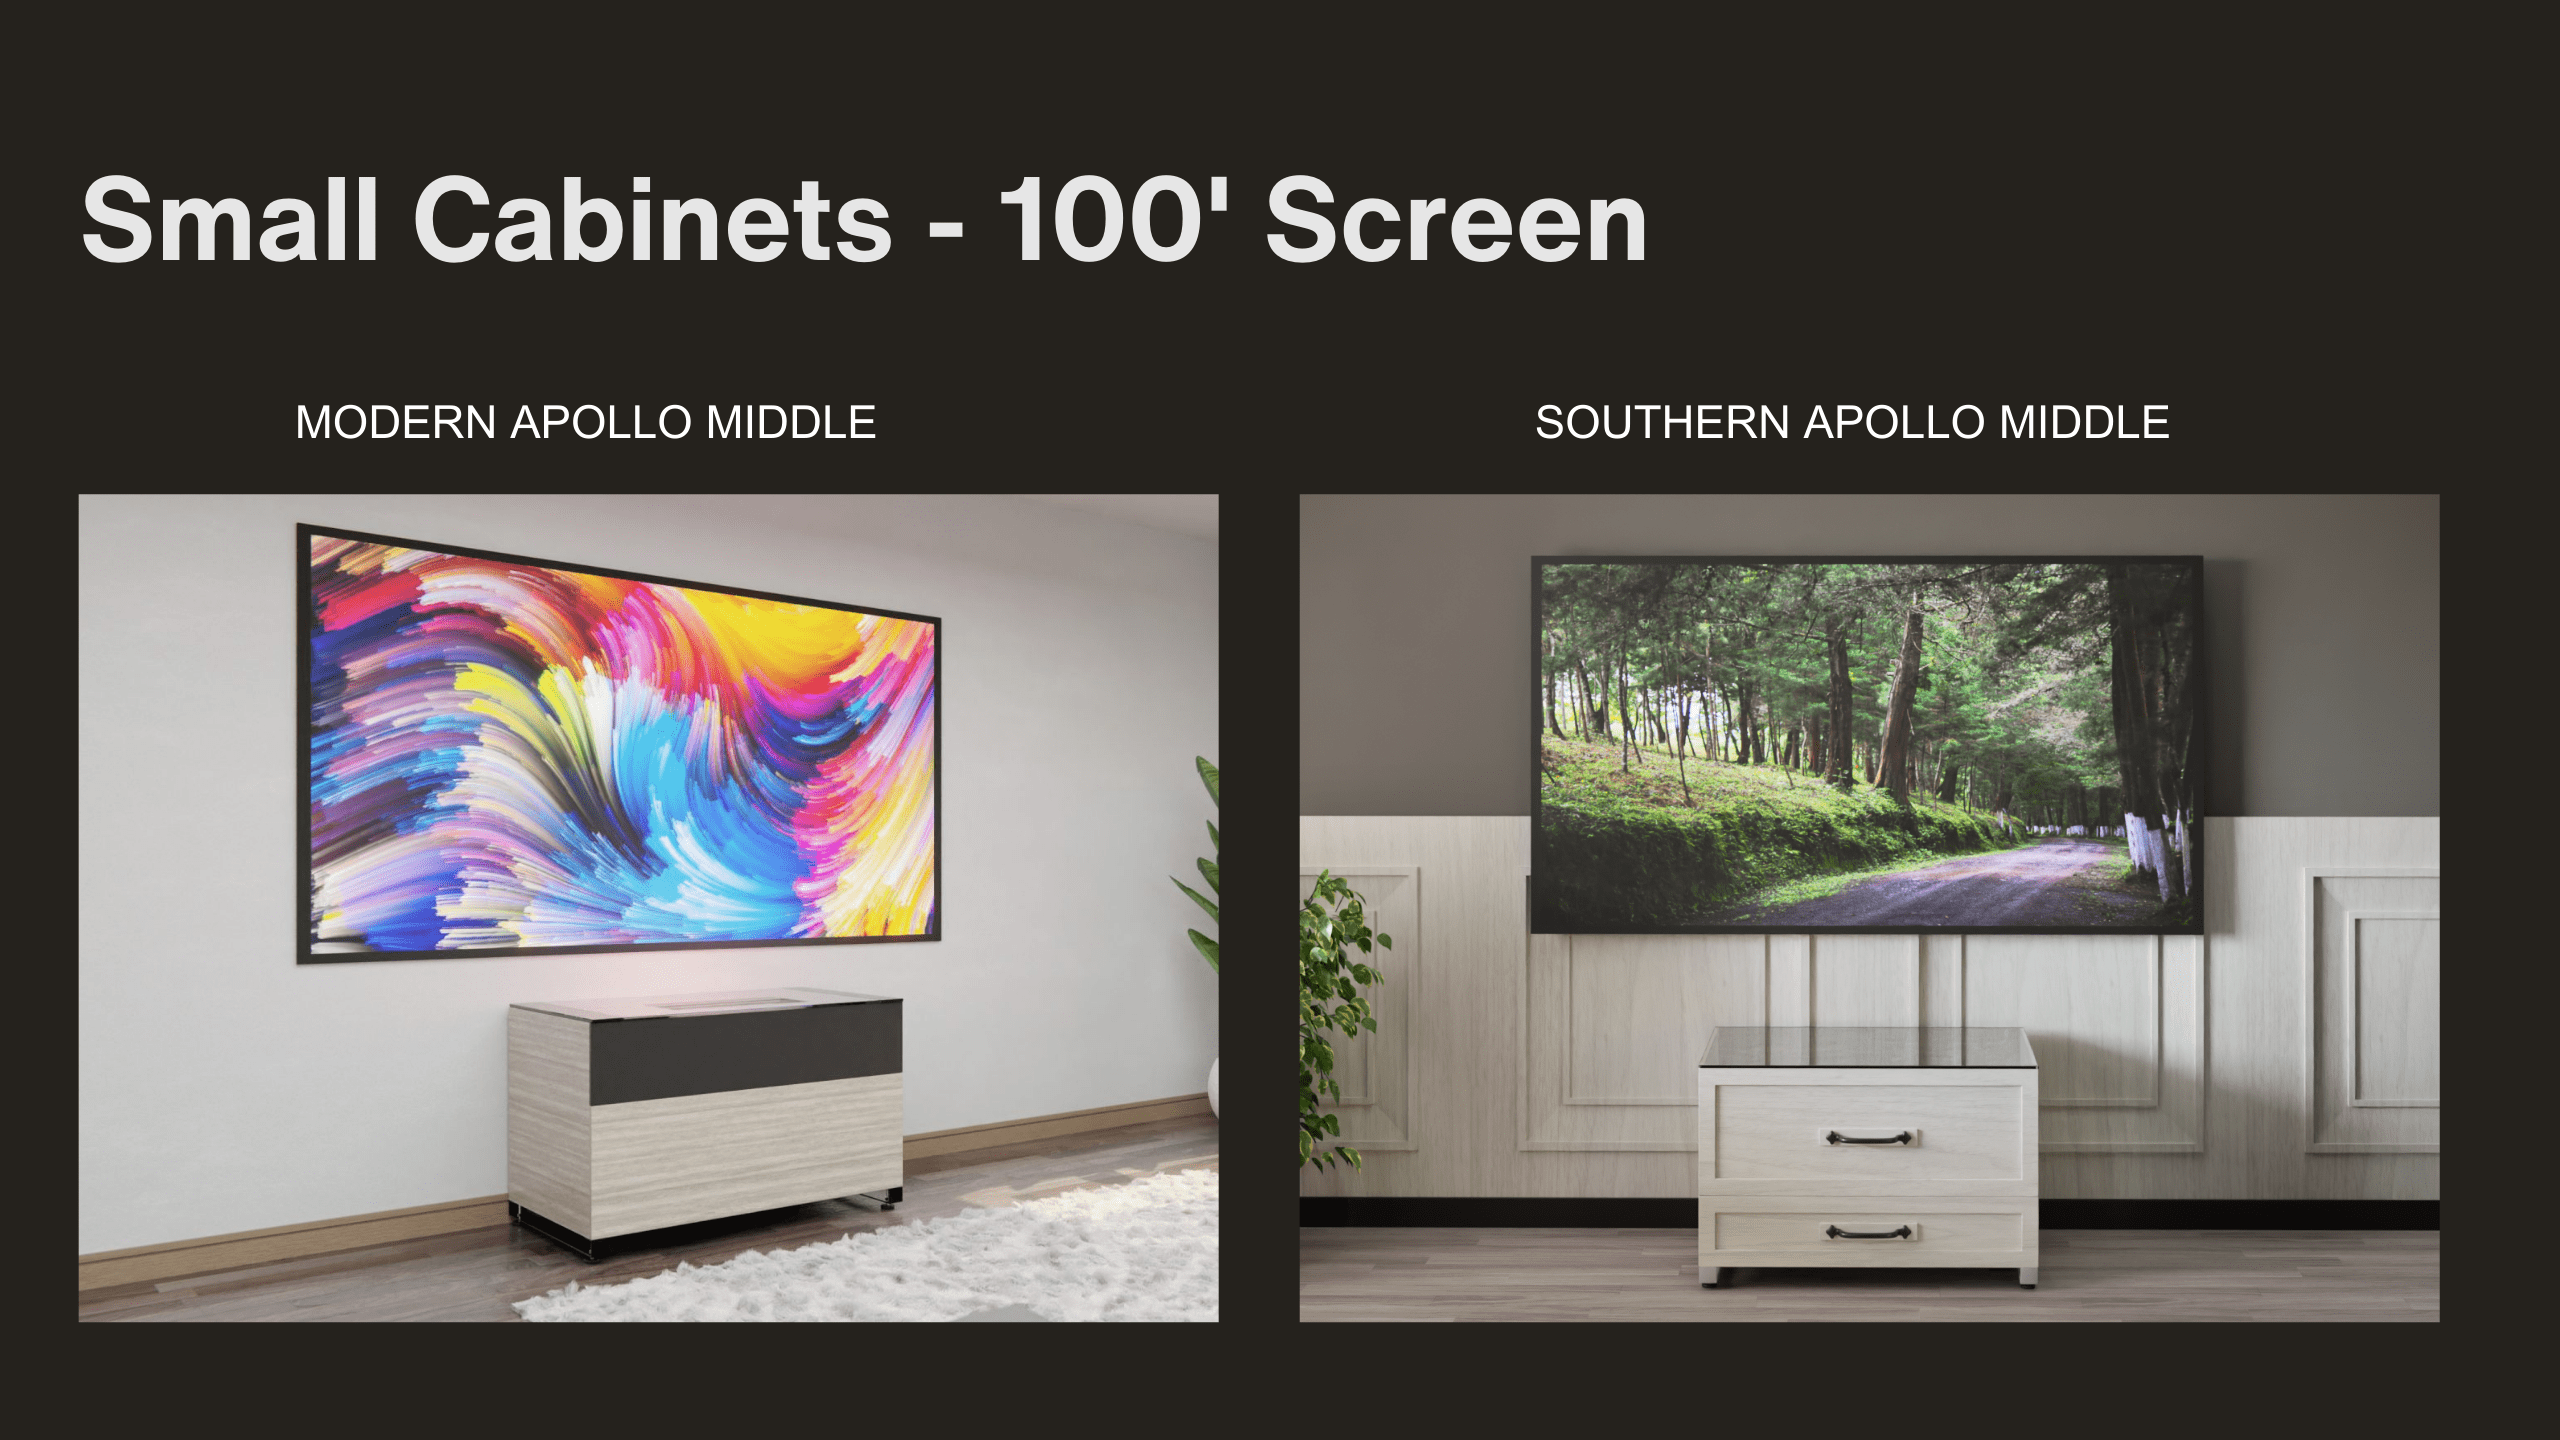 Small Cabinets | 100' Screen | Apollo Middle | Aegis AV Cabinets